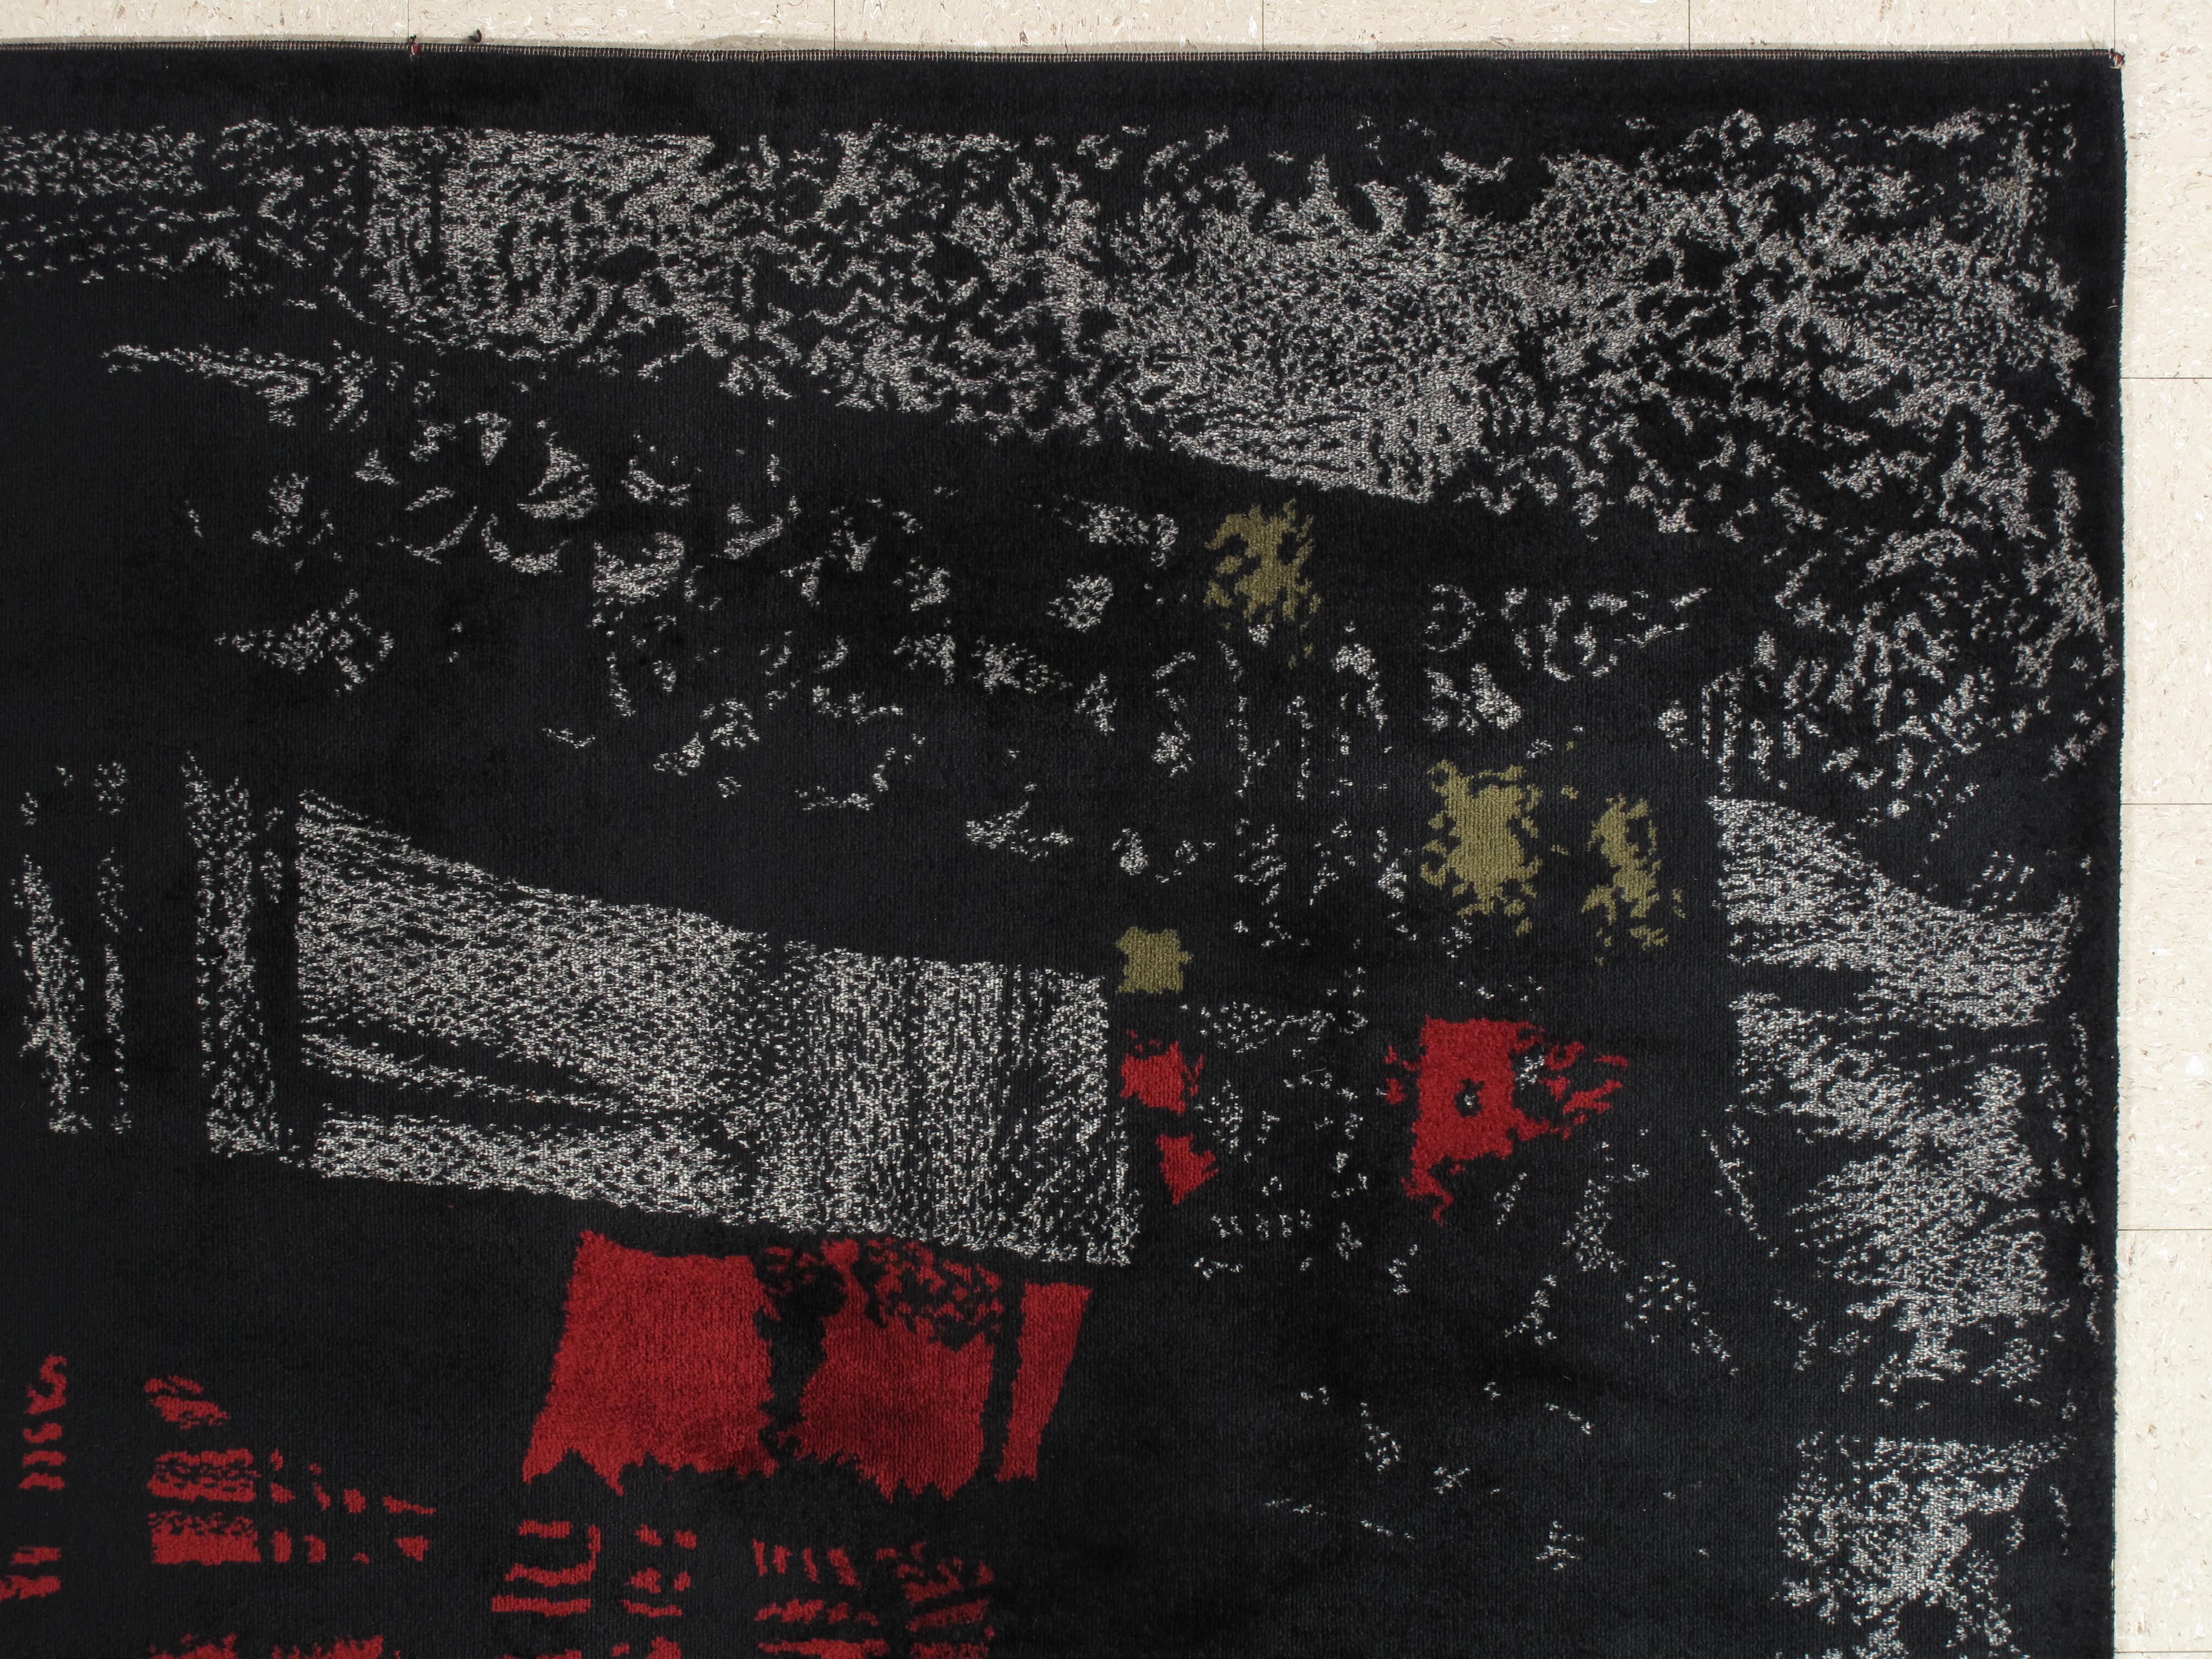 Un tapis exceptionnel fabriqué à Aubusson, par Maurice André, France 1950. Cette pièce post-moderne, Forme-Libre, Abstraction Géométrique, est réalisée en laine épaisse de couleur rouge foncé, gris, brun foncé, sur fond noir.

Signature en bas à